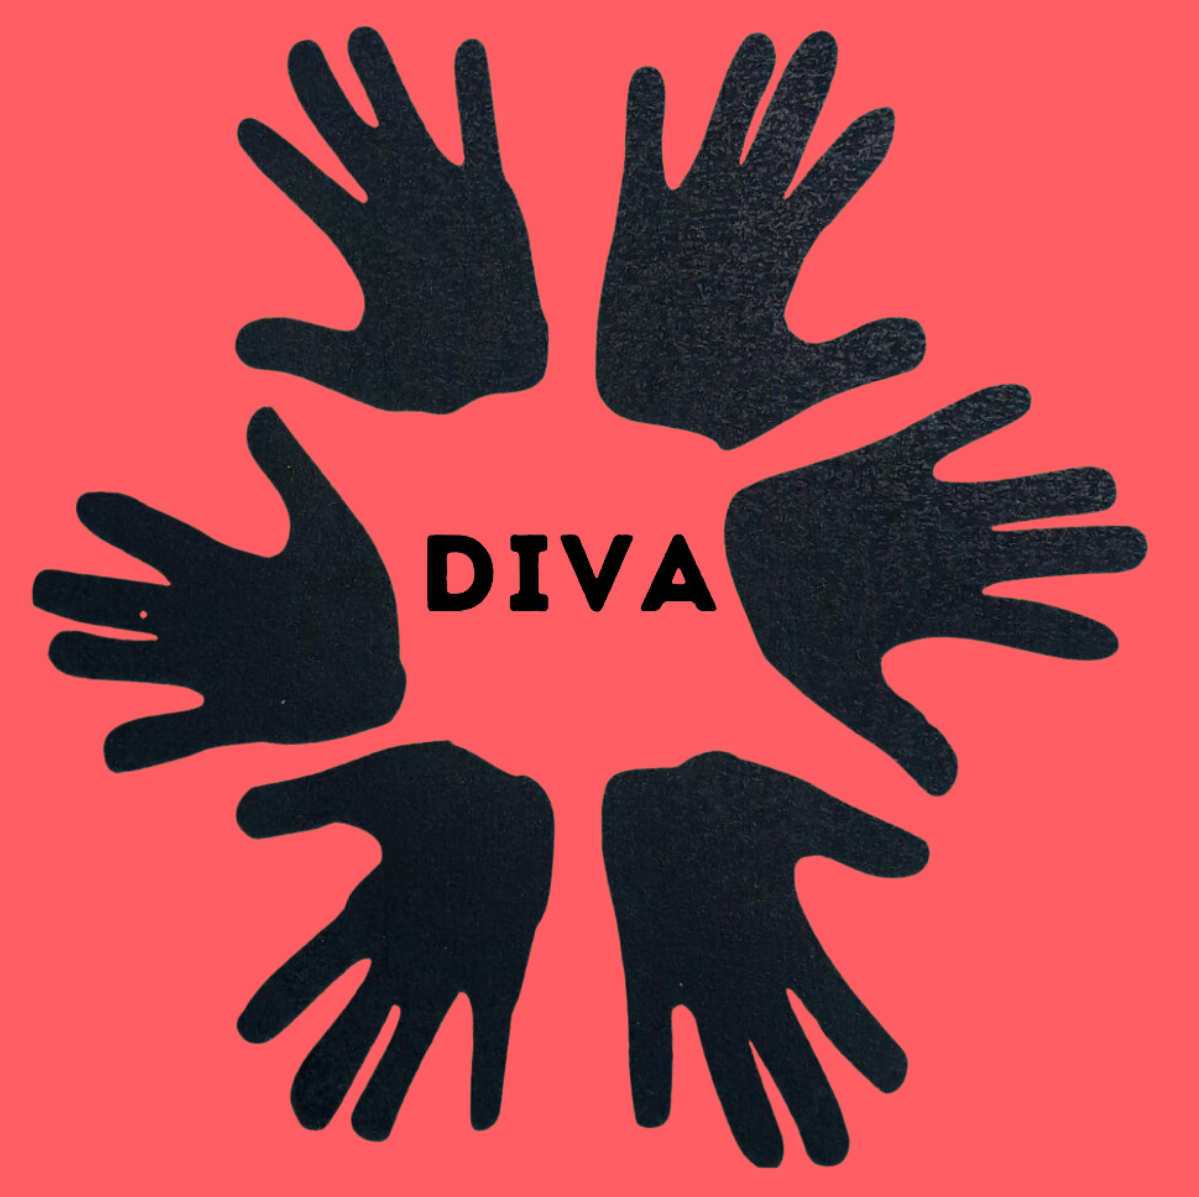 Association Diva